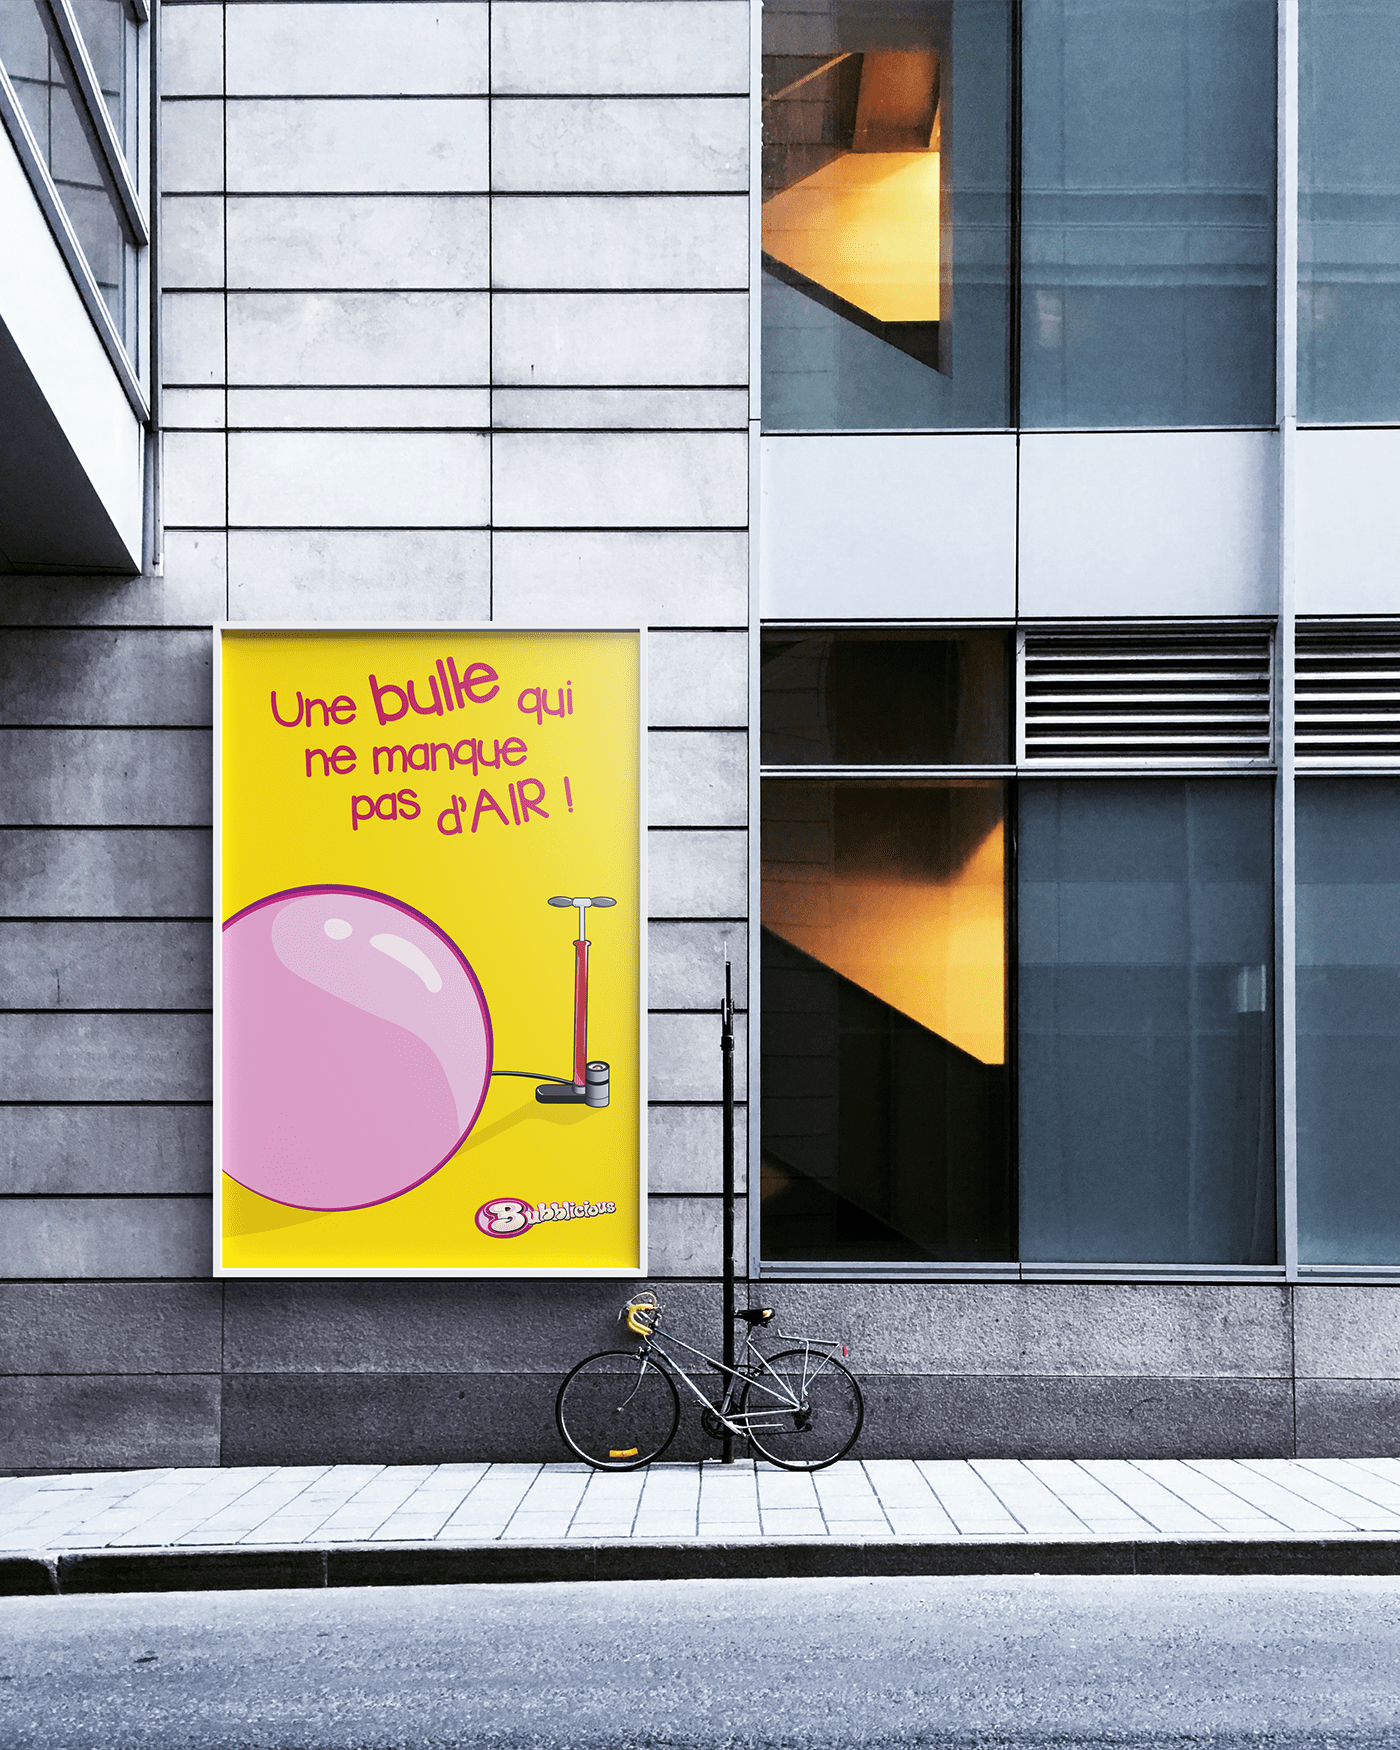 chewing-gum pub affiche bubblicious poster campagne de pub publicity slogan